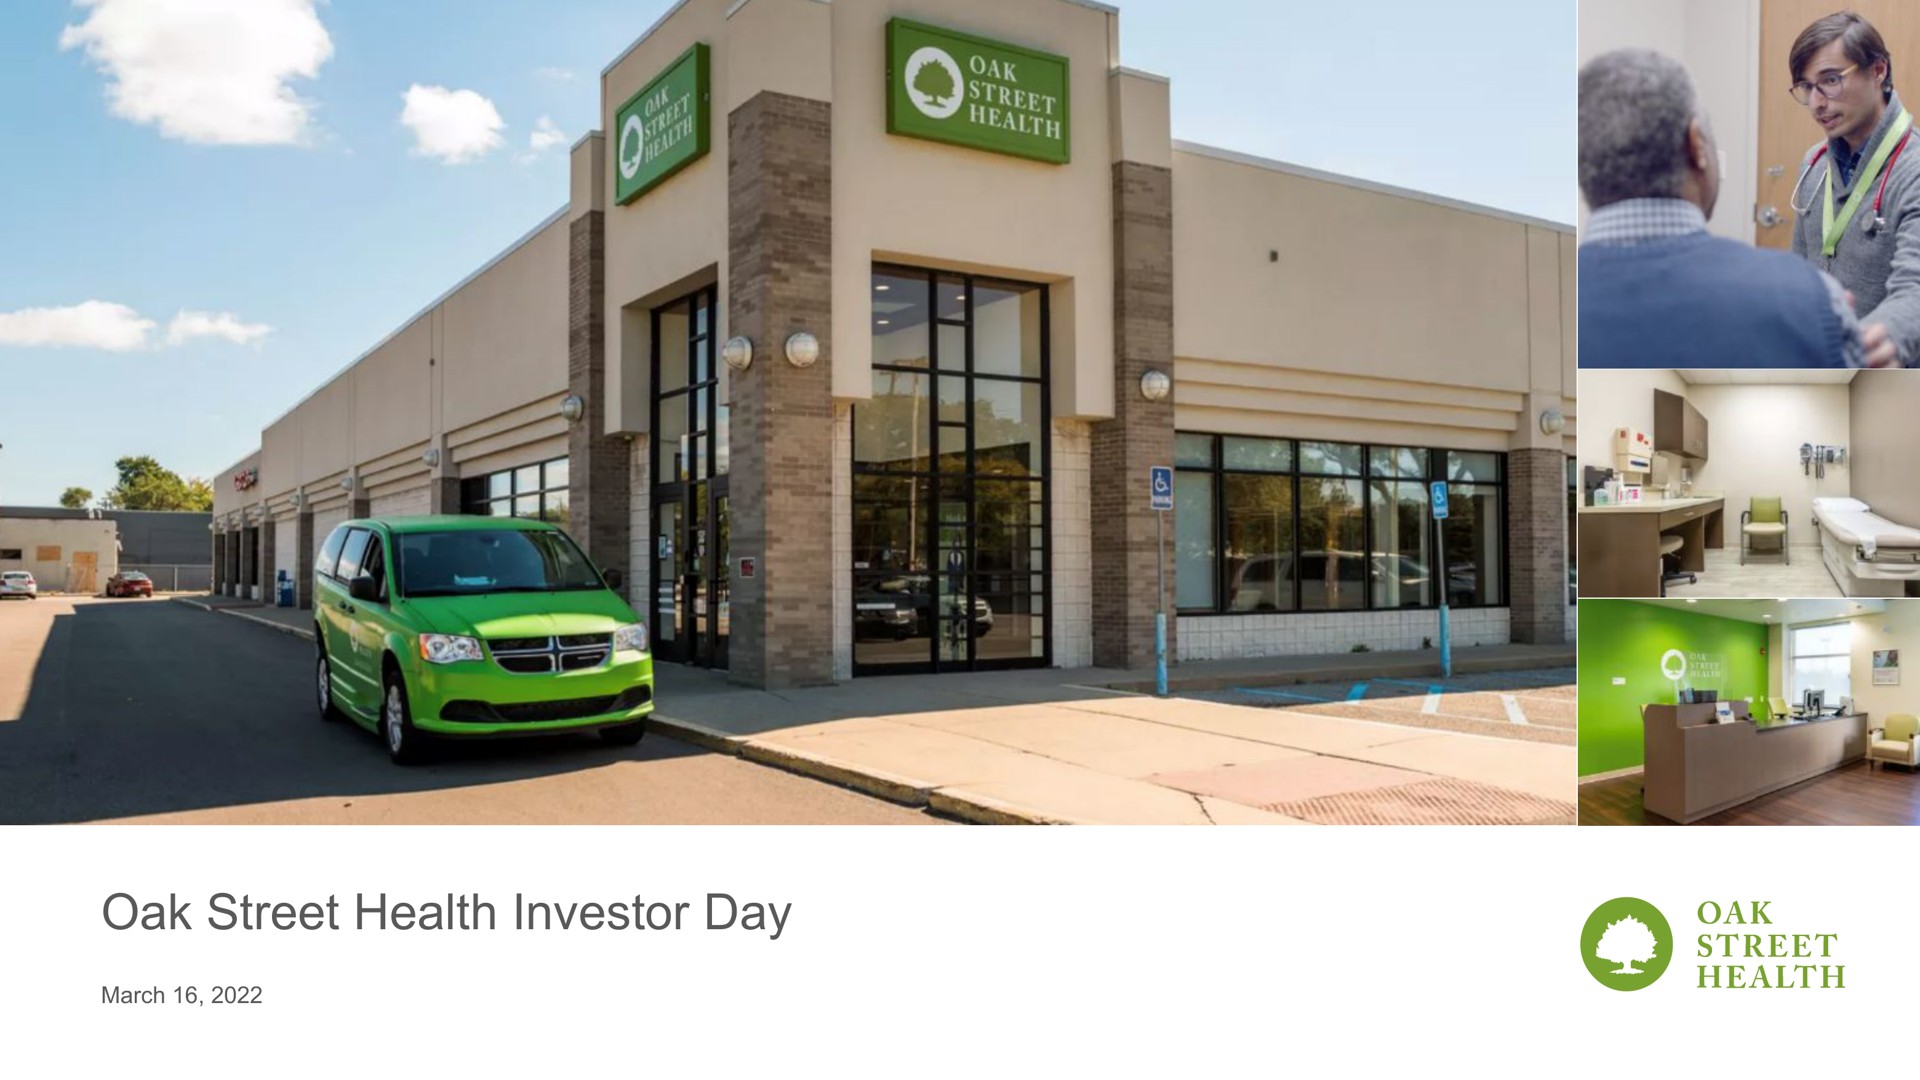 oak street health investor day | Oak Street Health